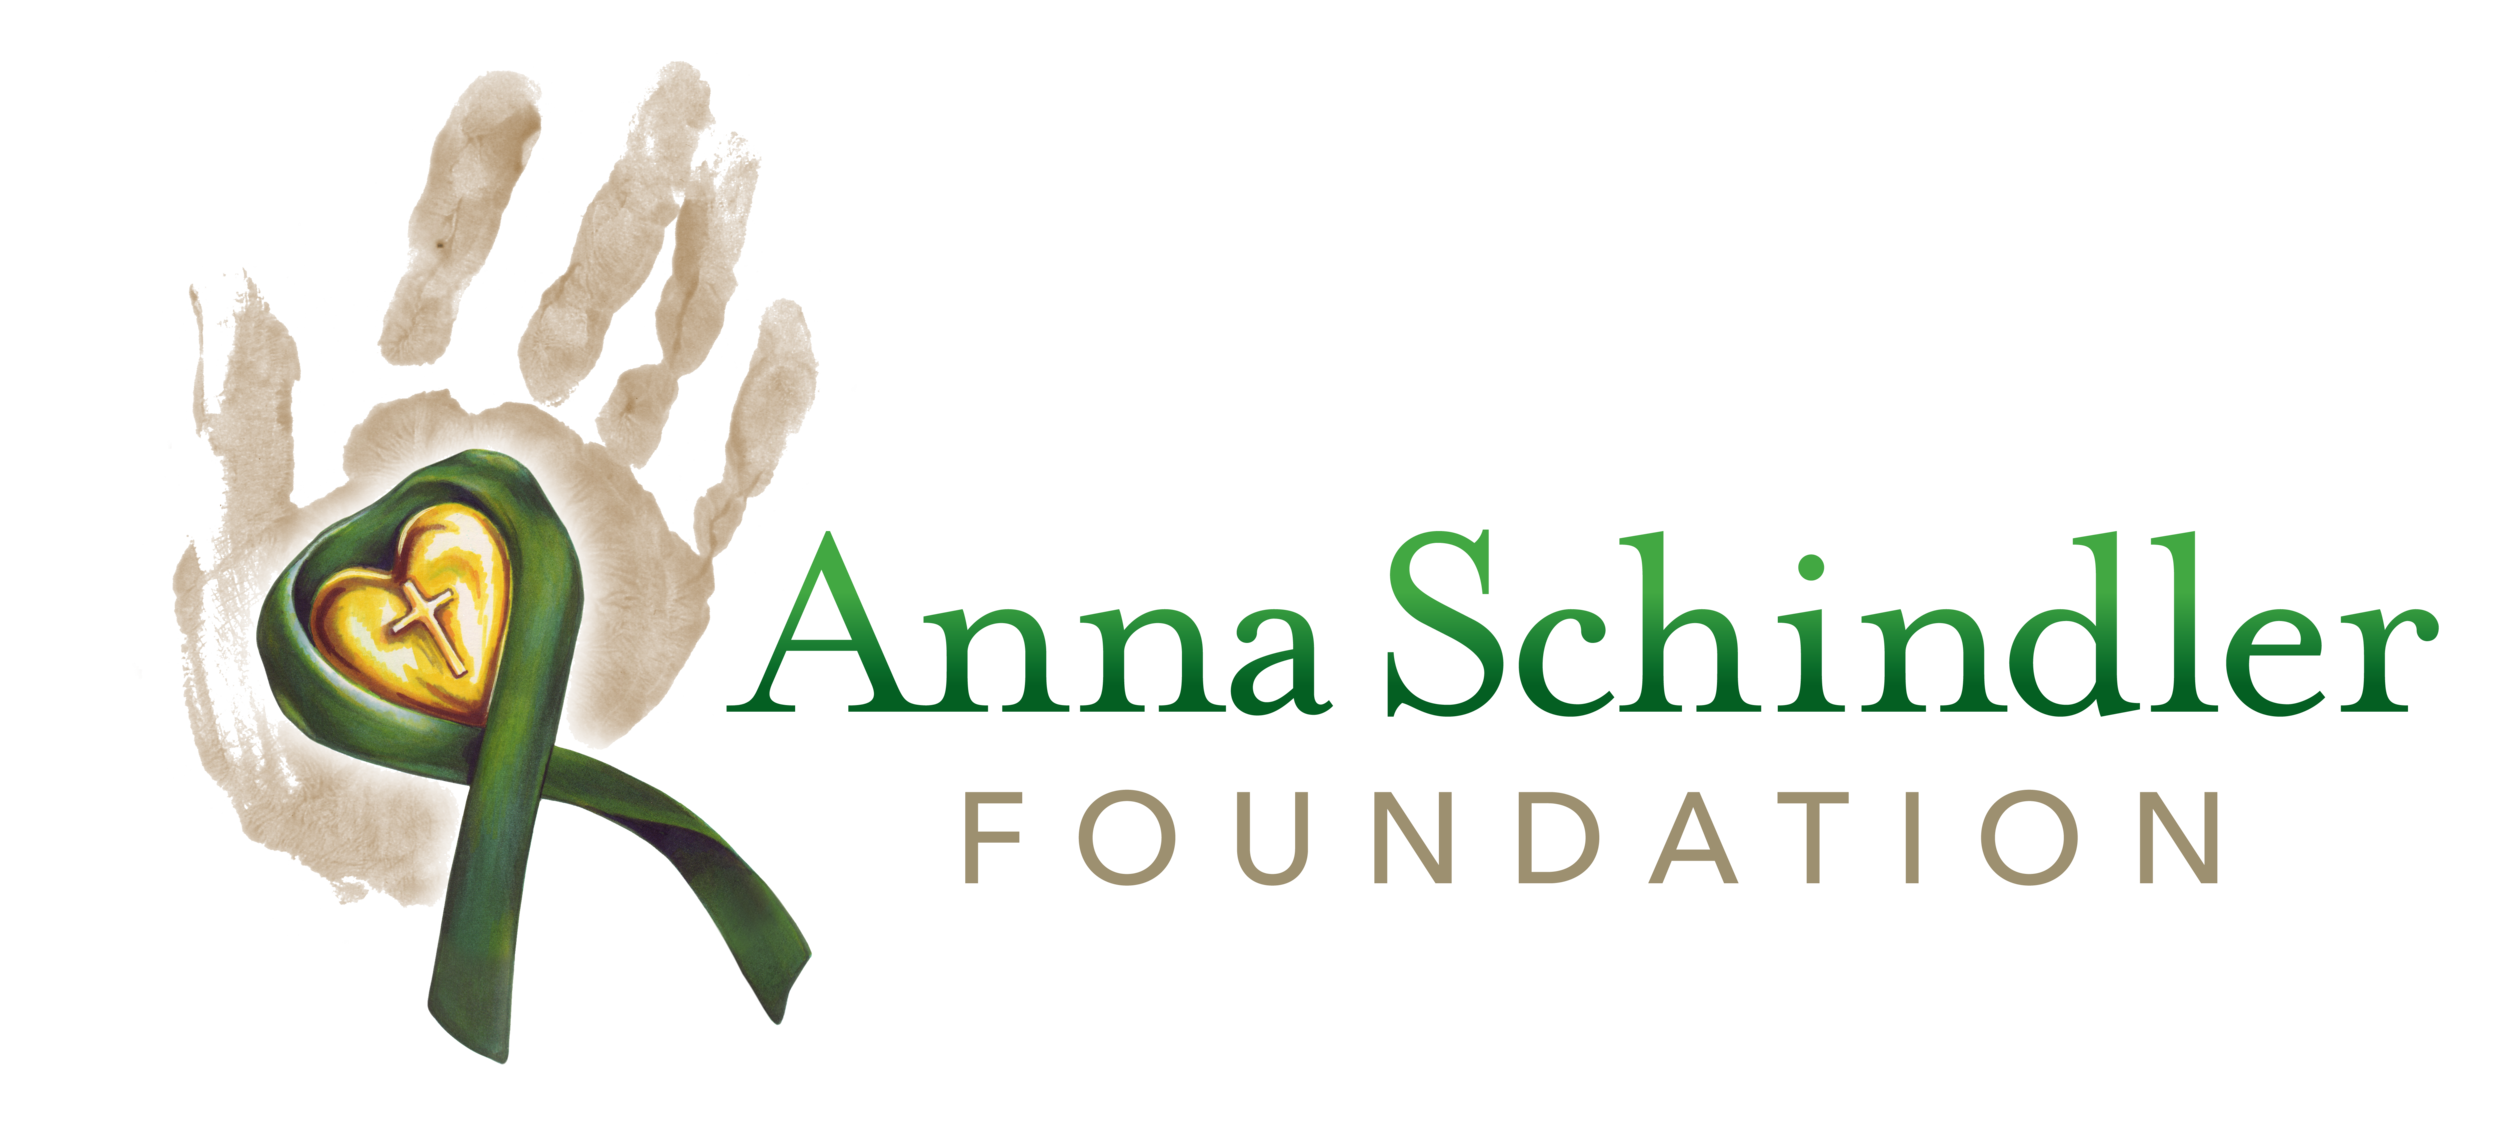 The Anna Schindler Foundation